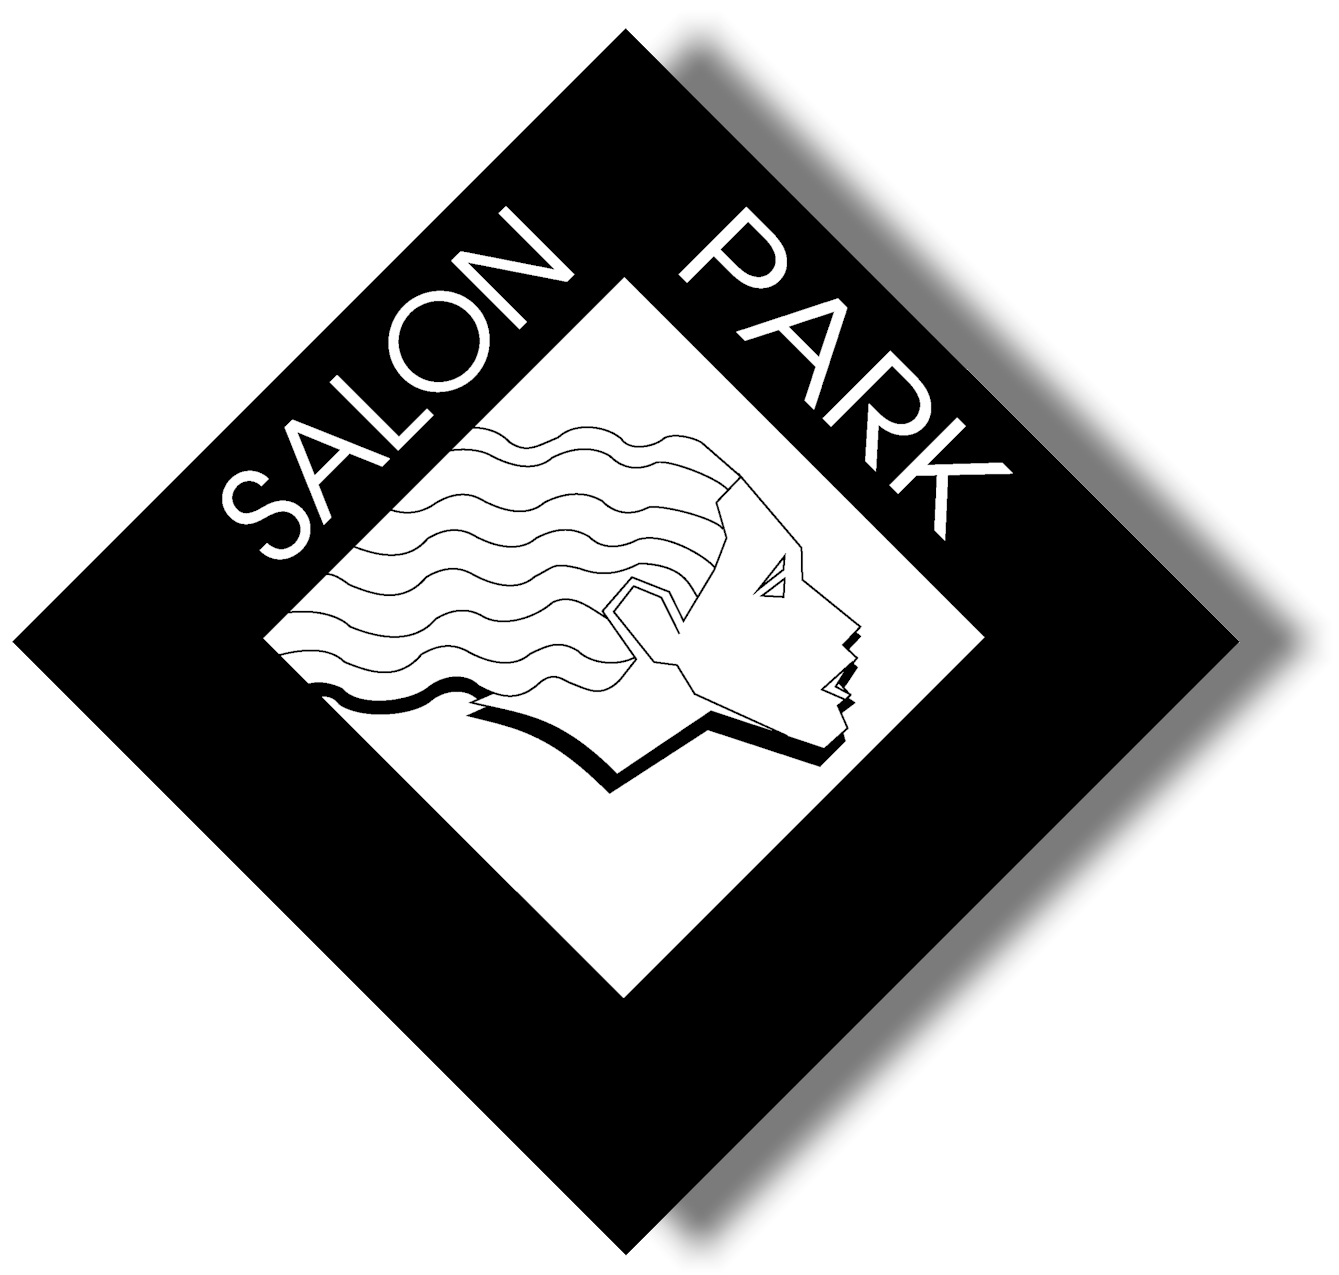 salon-park-logo-with-shadow